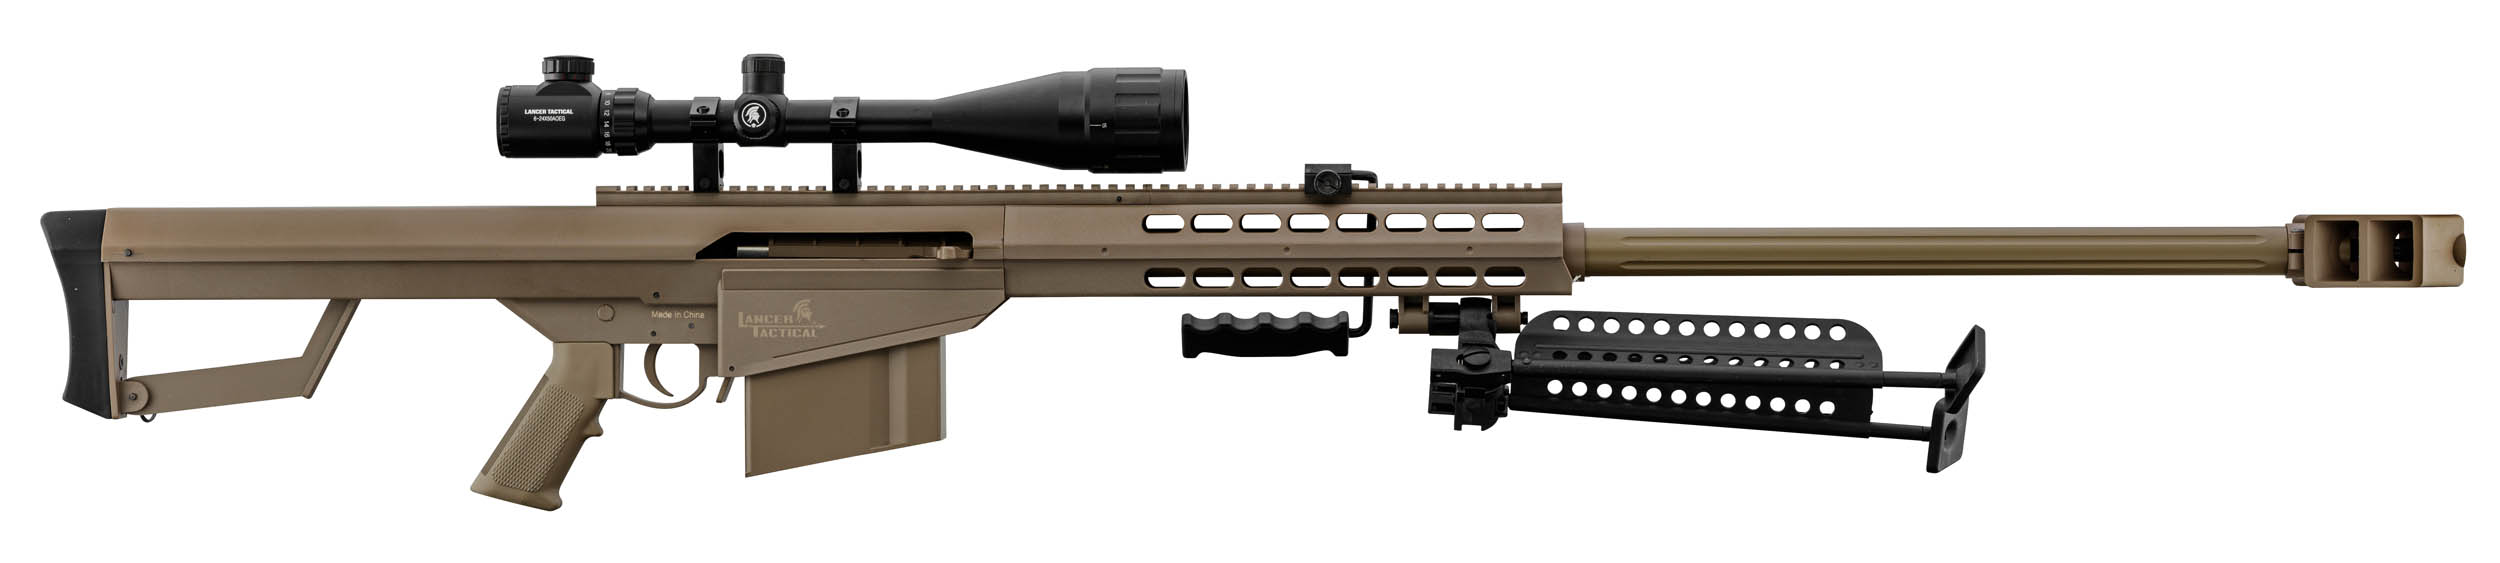 PCKLR3052-10 Pack Sniper LT-20 tan M82 1,5J + lunette + bi-pied + poignée - PCKLR3052